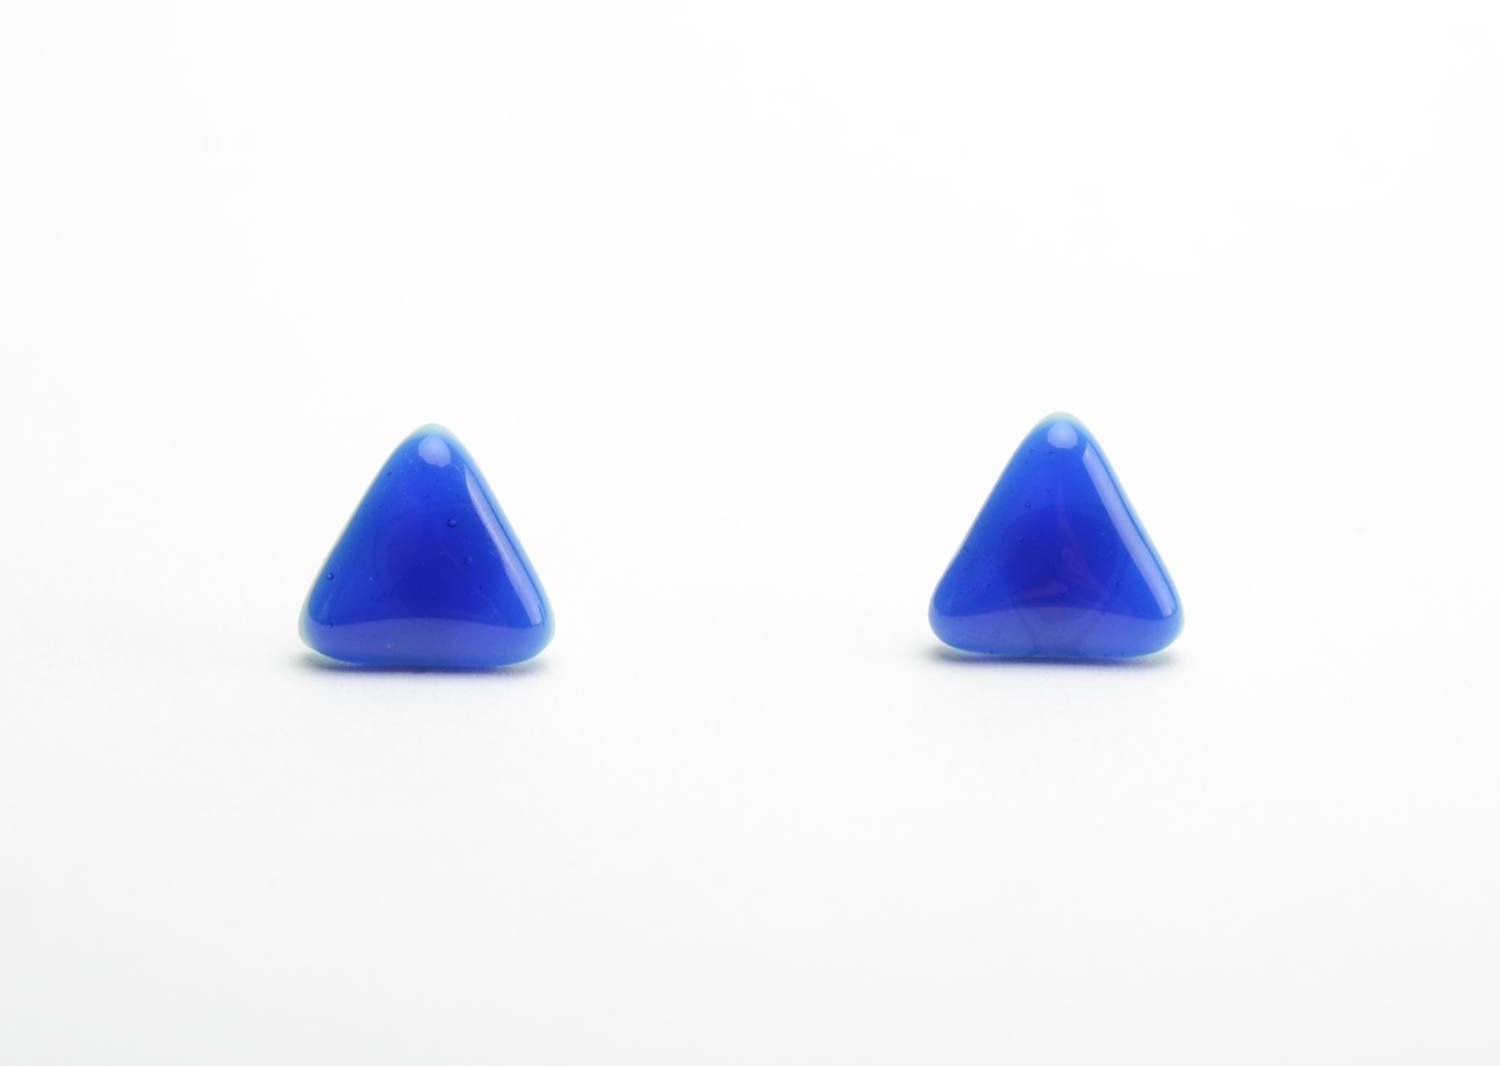 Красивые серьги из фьюзинг стекла синие треугольные женские ручной работы фото 5